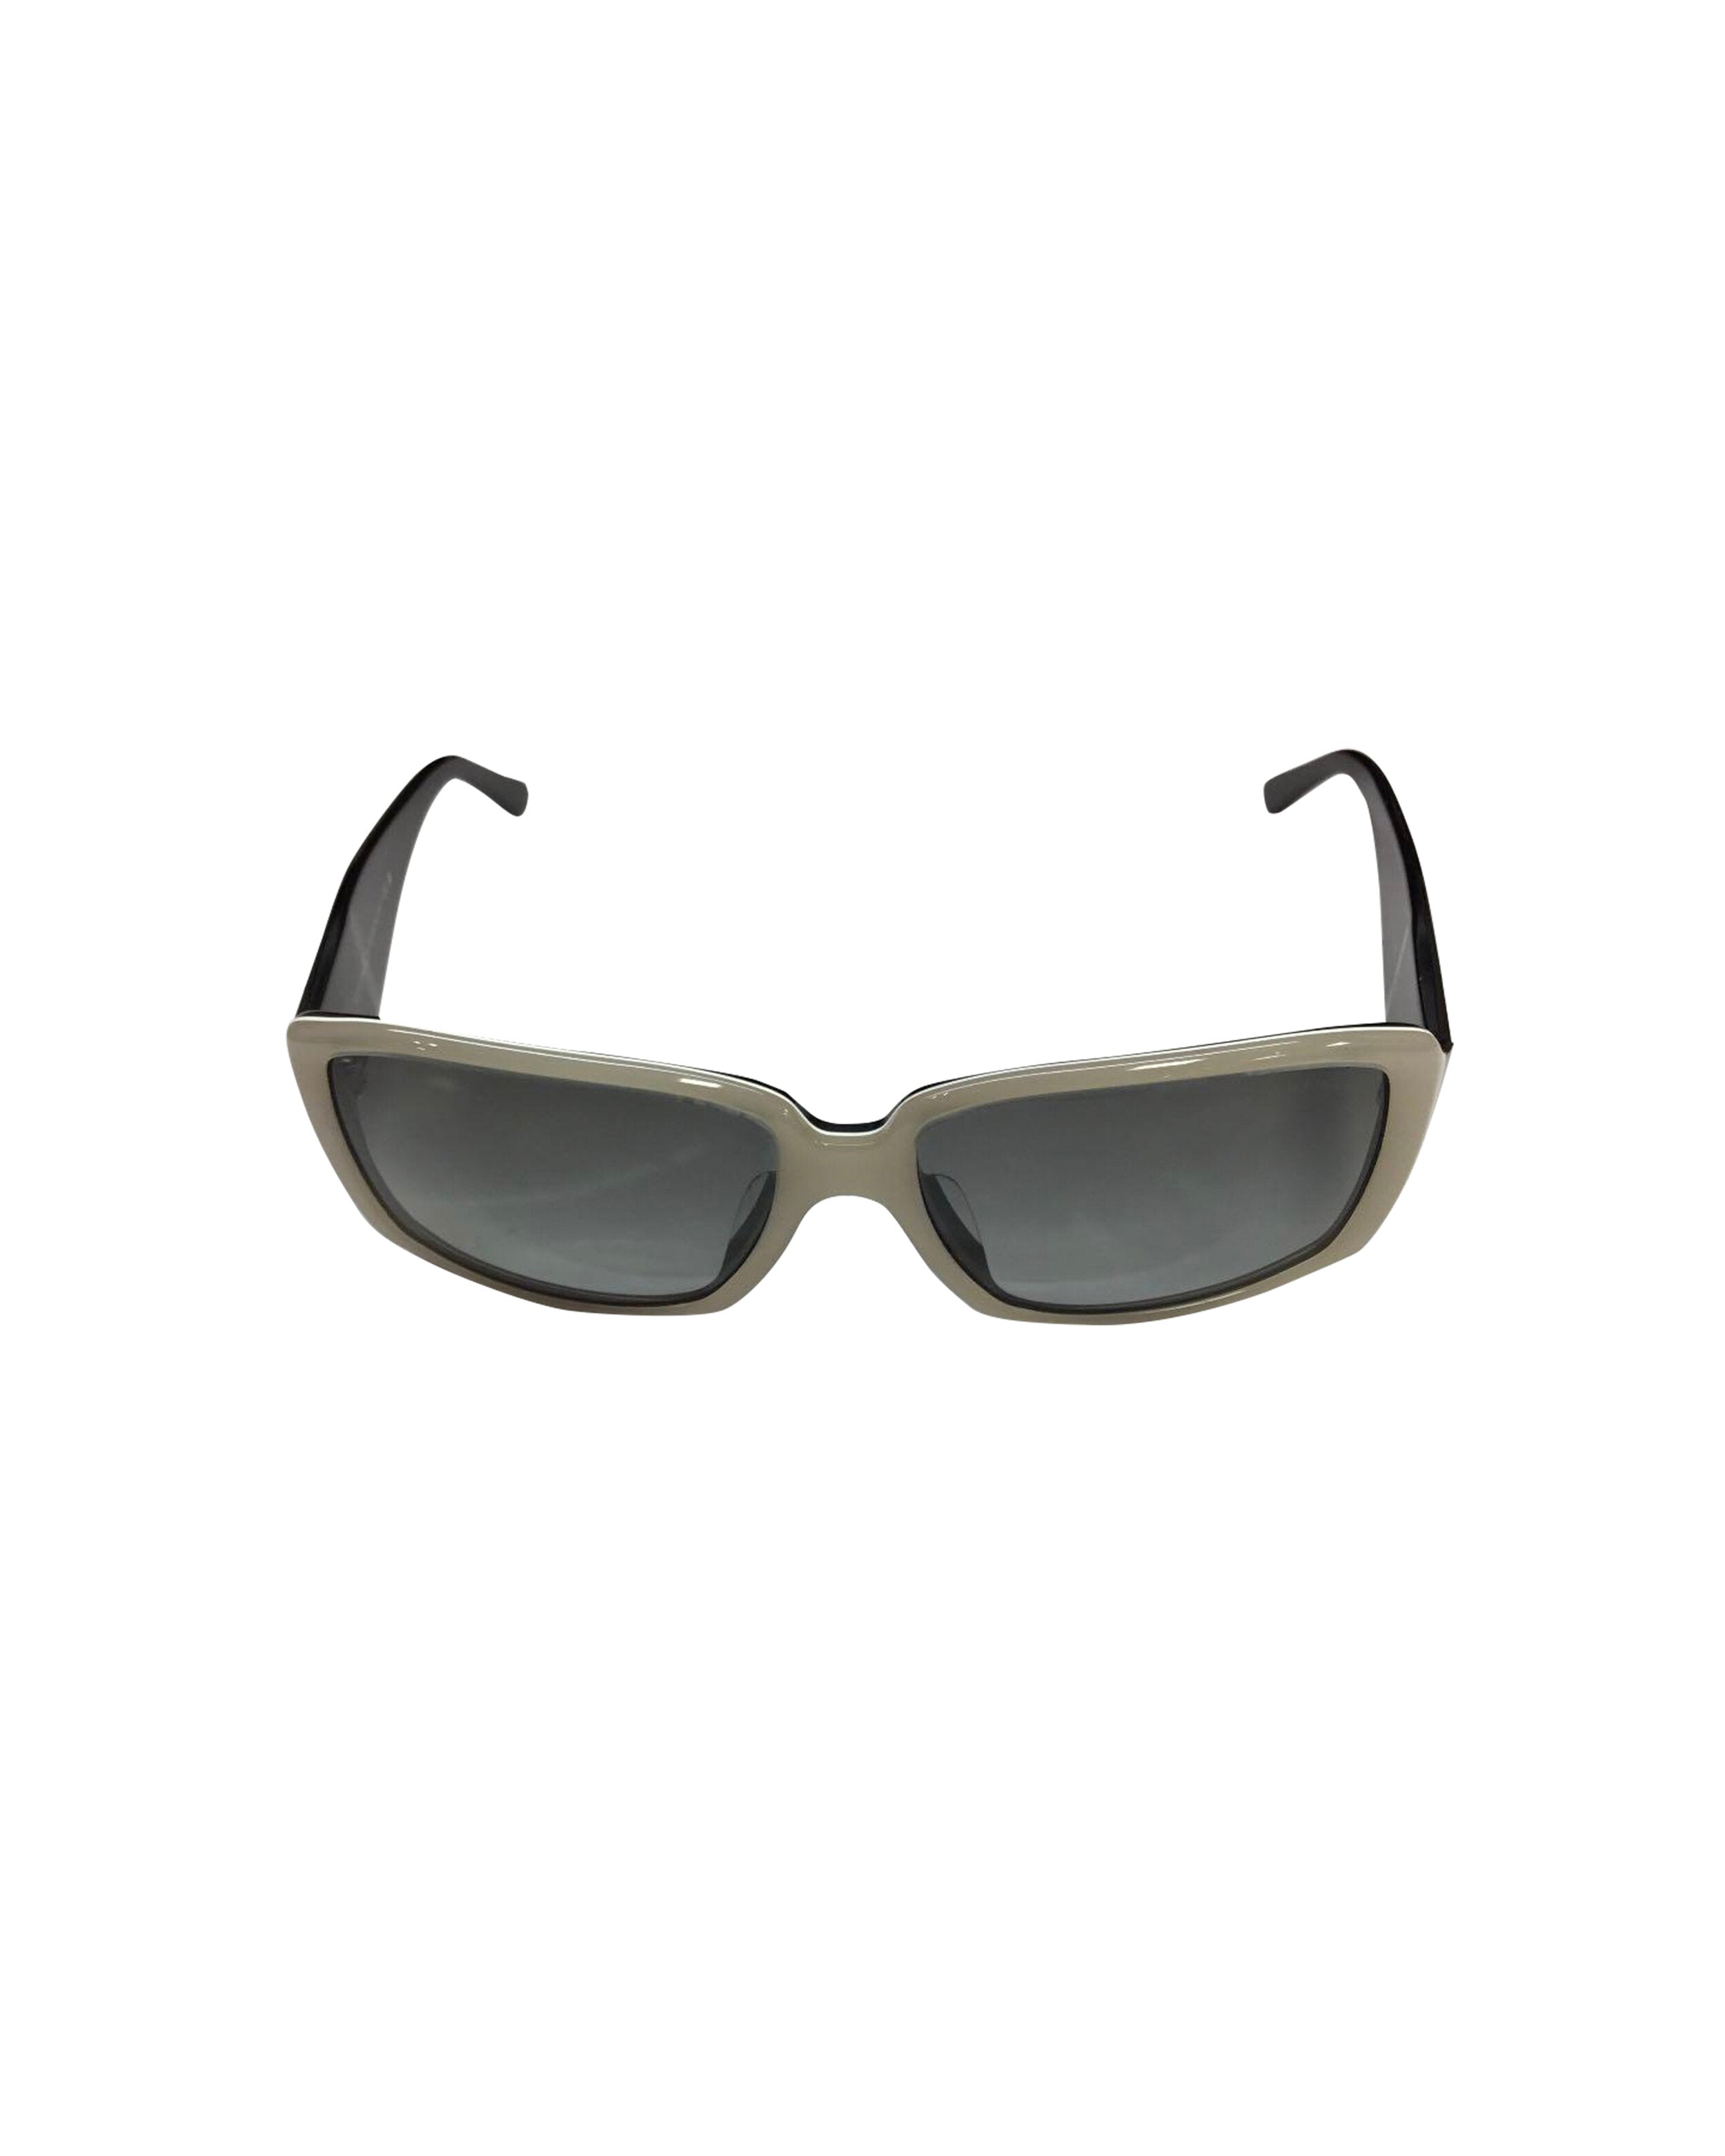 Chanel White and Black CC Sunglasses